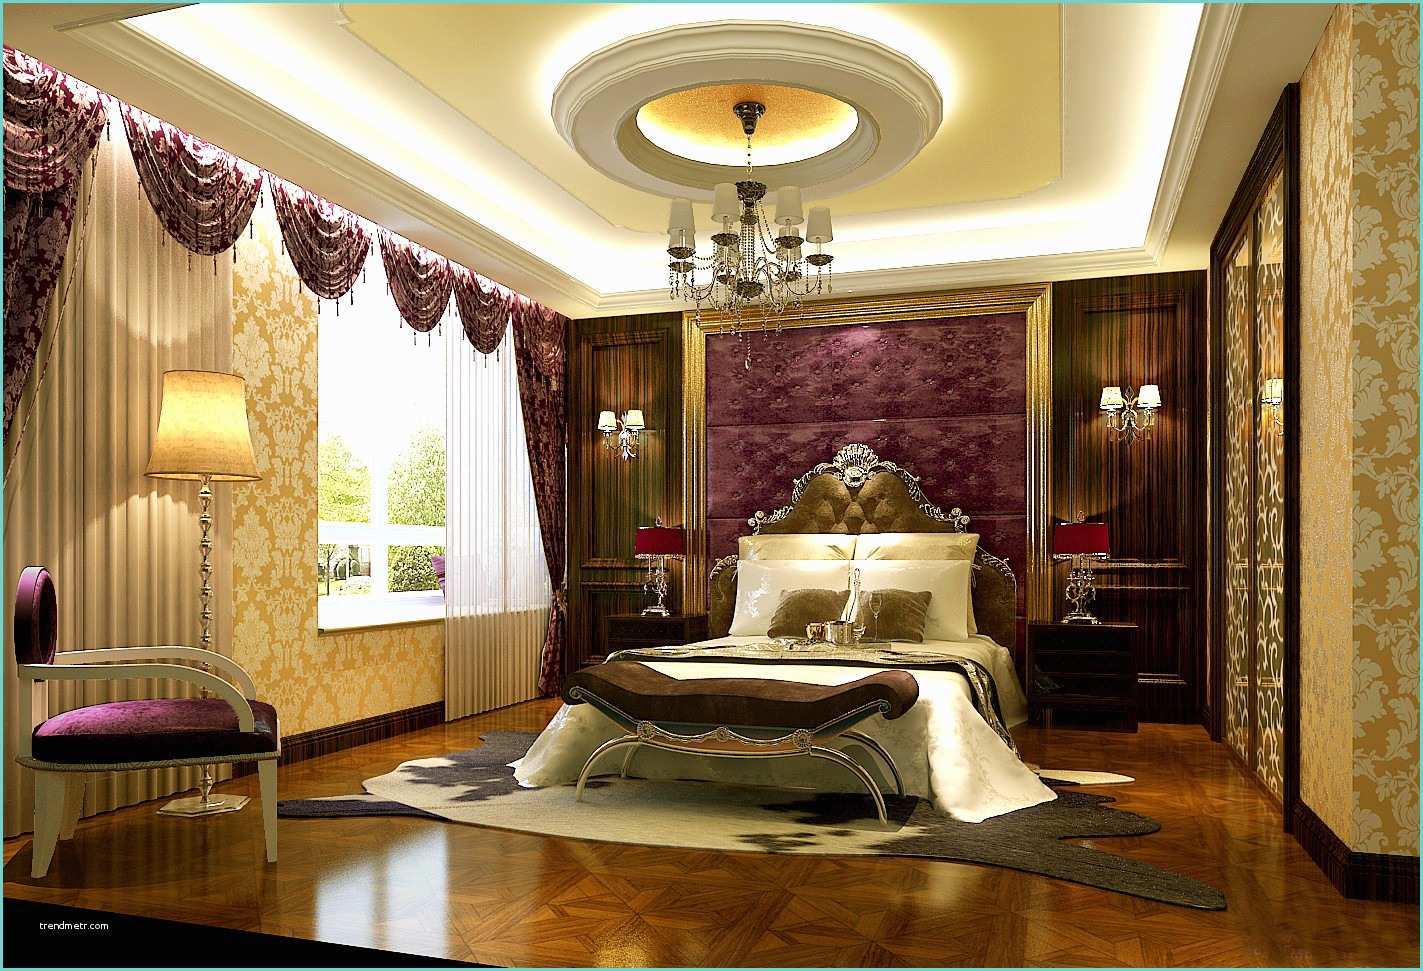 Ceiling Pop Design 25 Latest False Designs for Living Room & Bed Room